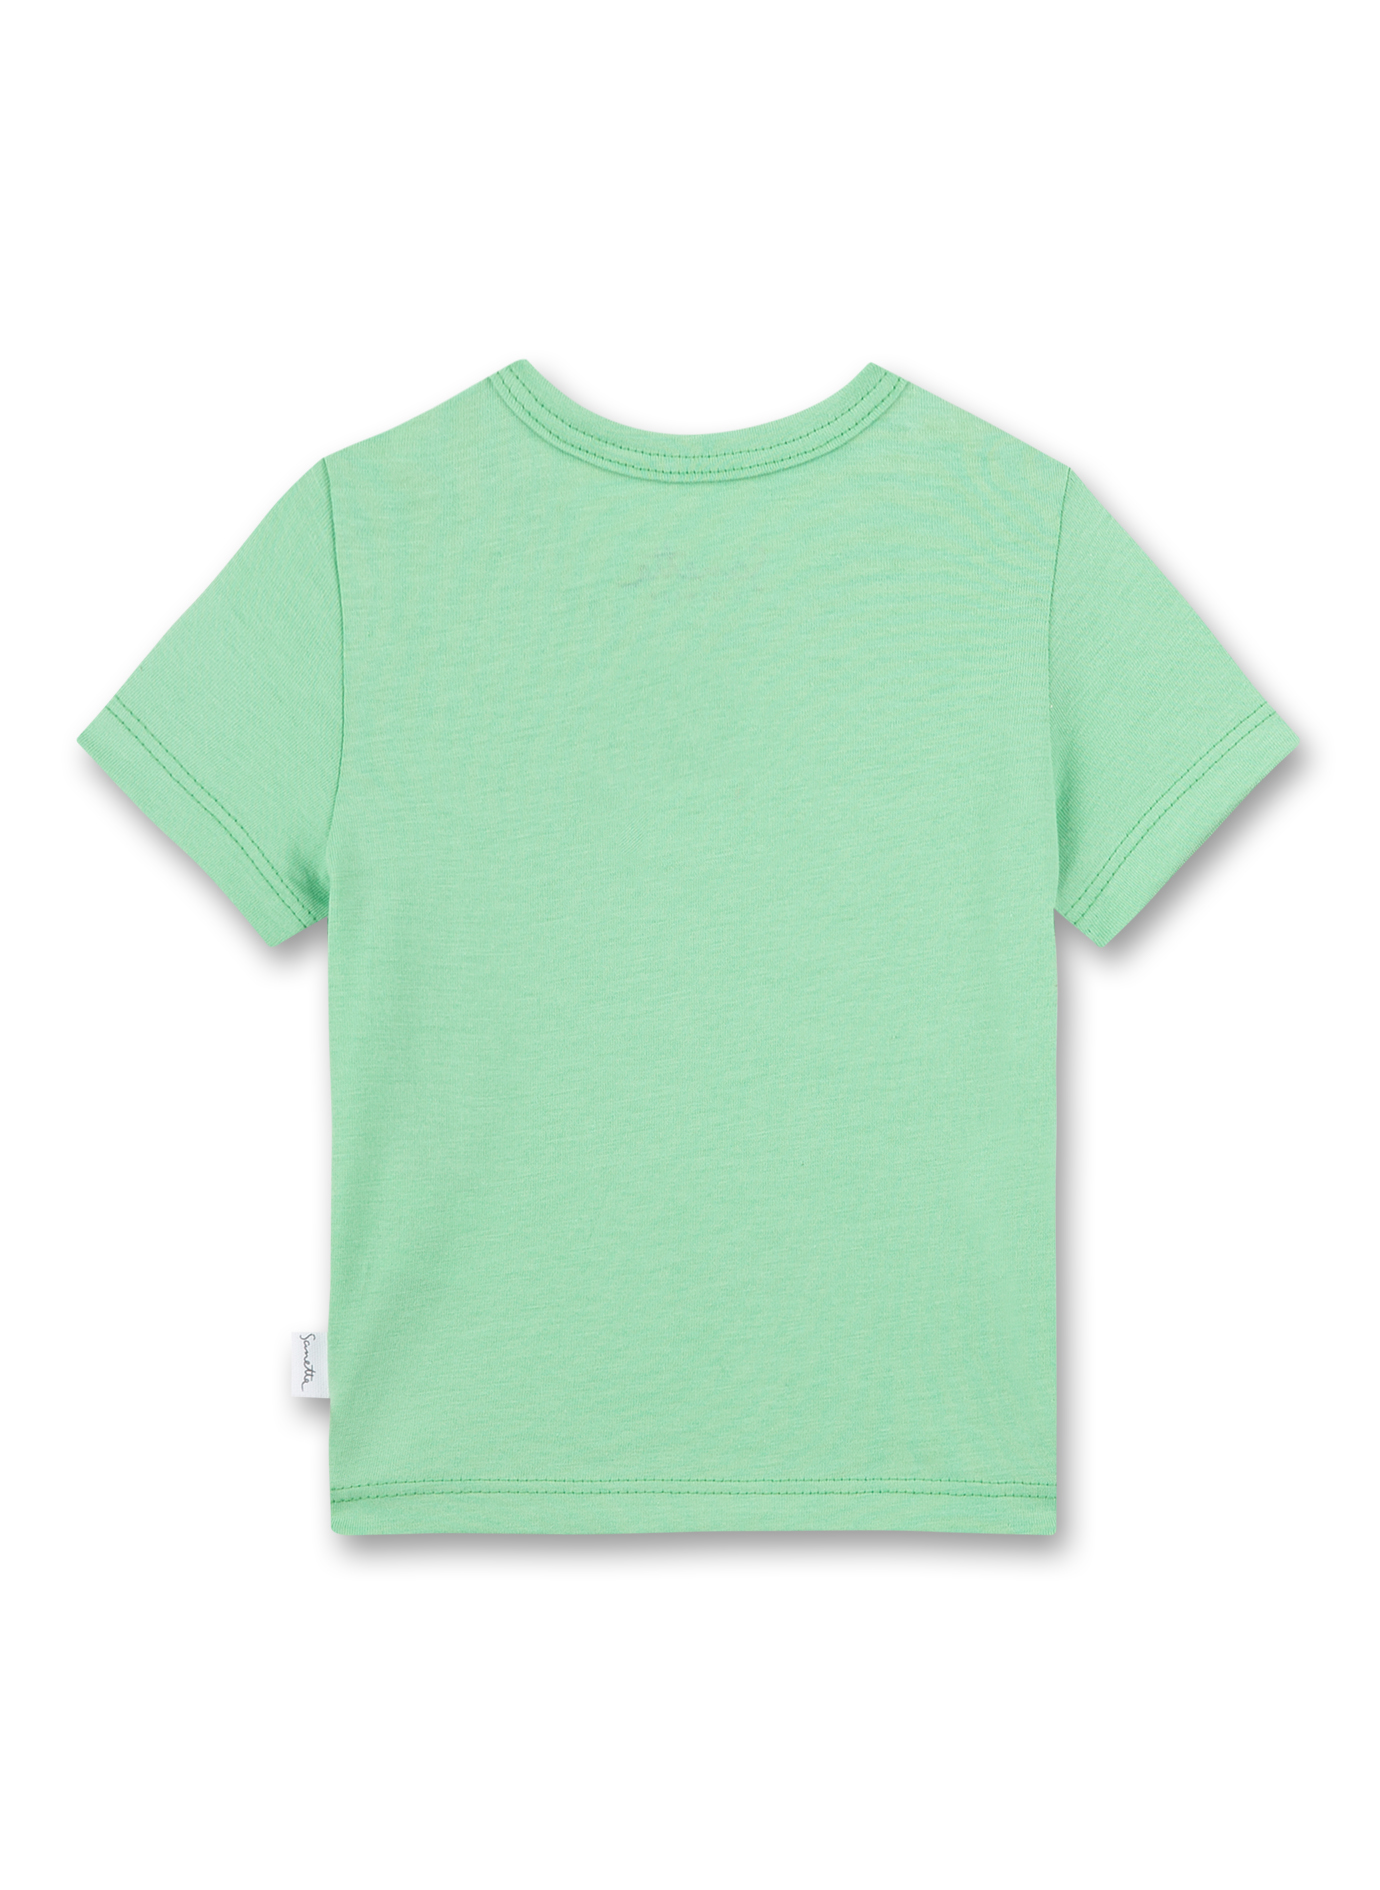 Jungen T-Shirt Grün